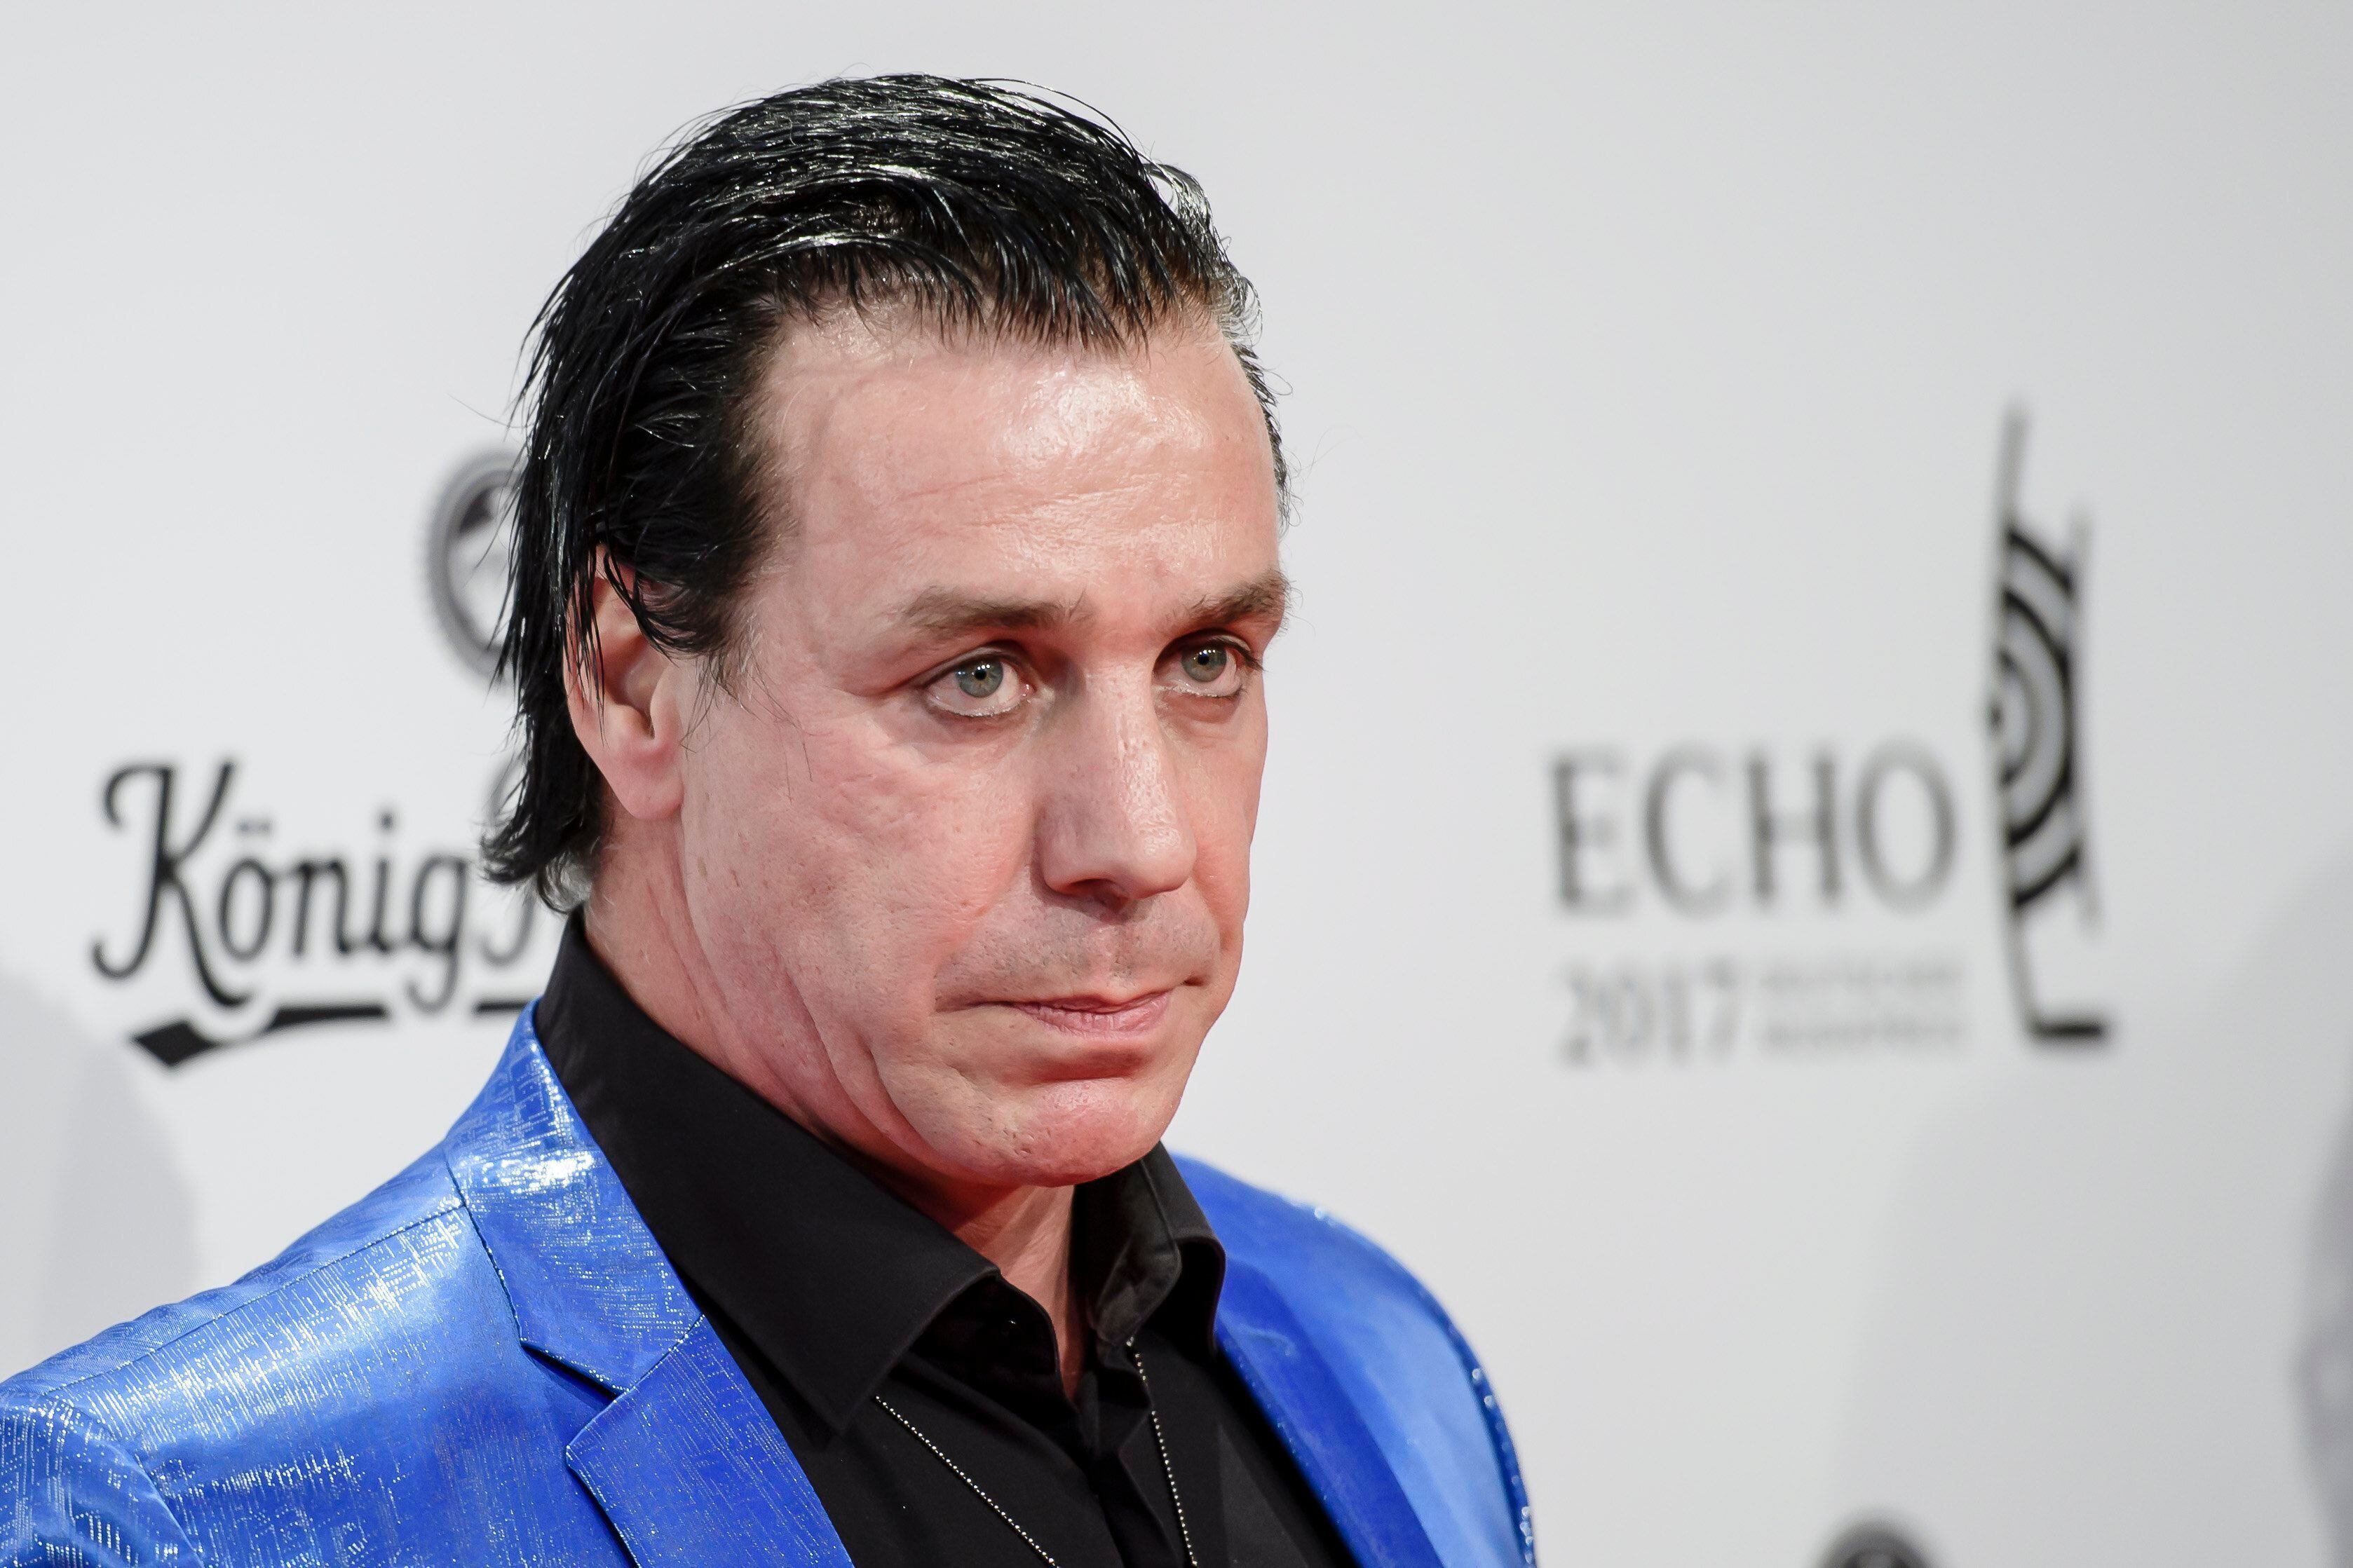 El cantante del grupo de rock Rammstein, Till Lindemann, dará 3 conciertos en México. EFE/Clemens Bilan/Archivo